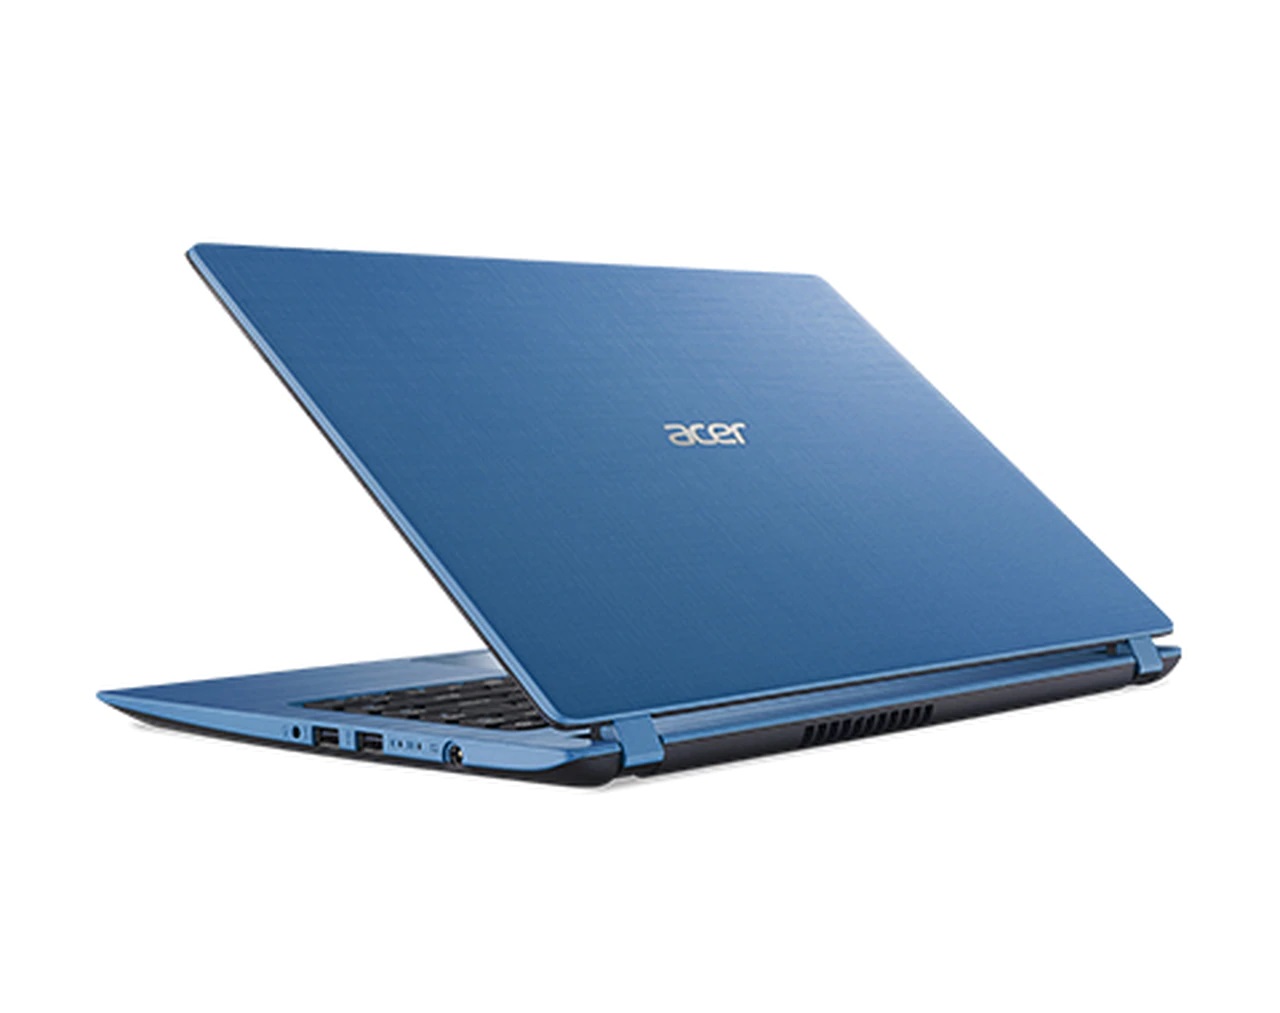 Acer Aspire 3 - A315-53-32TF 15.6 inch Laptop i3-8130U 4GB 16GB 1TB HDD W10H, Indigo Blue - image 2 of 3